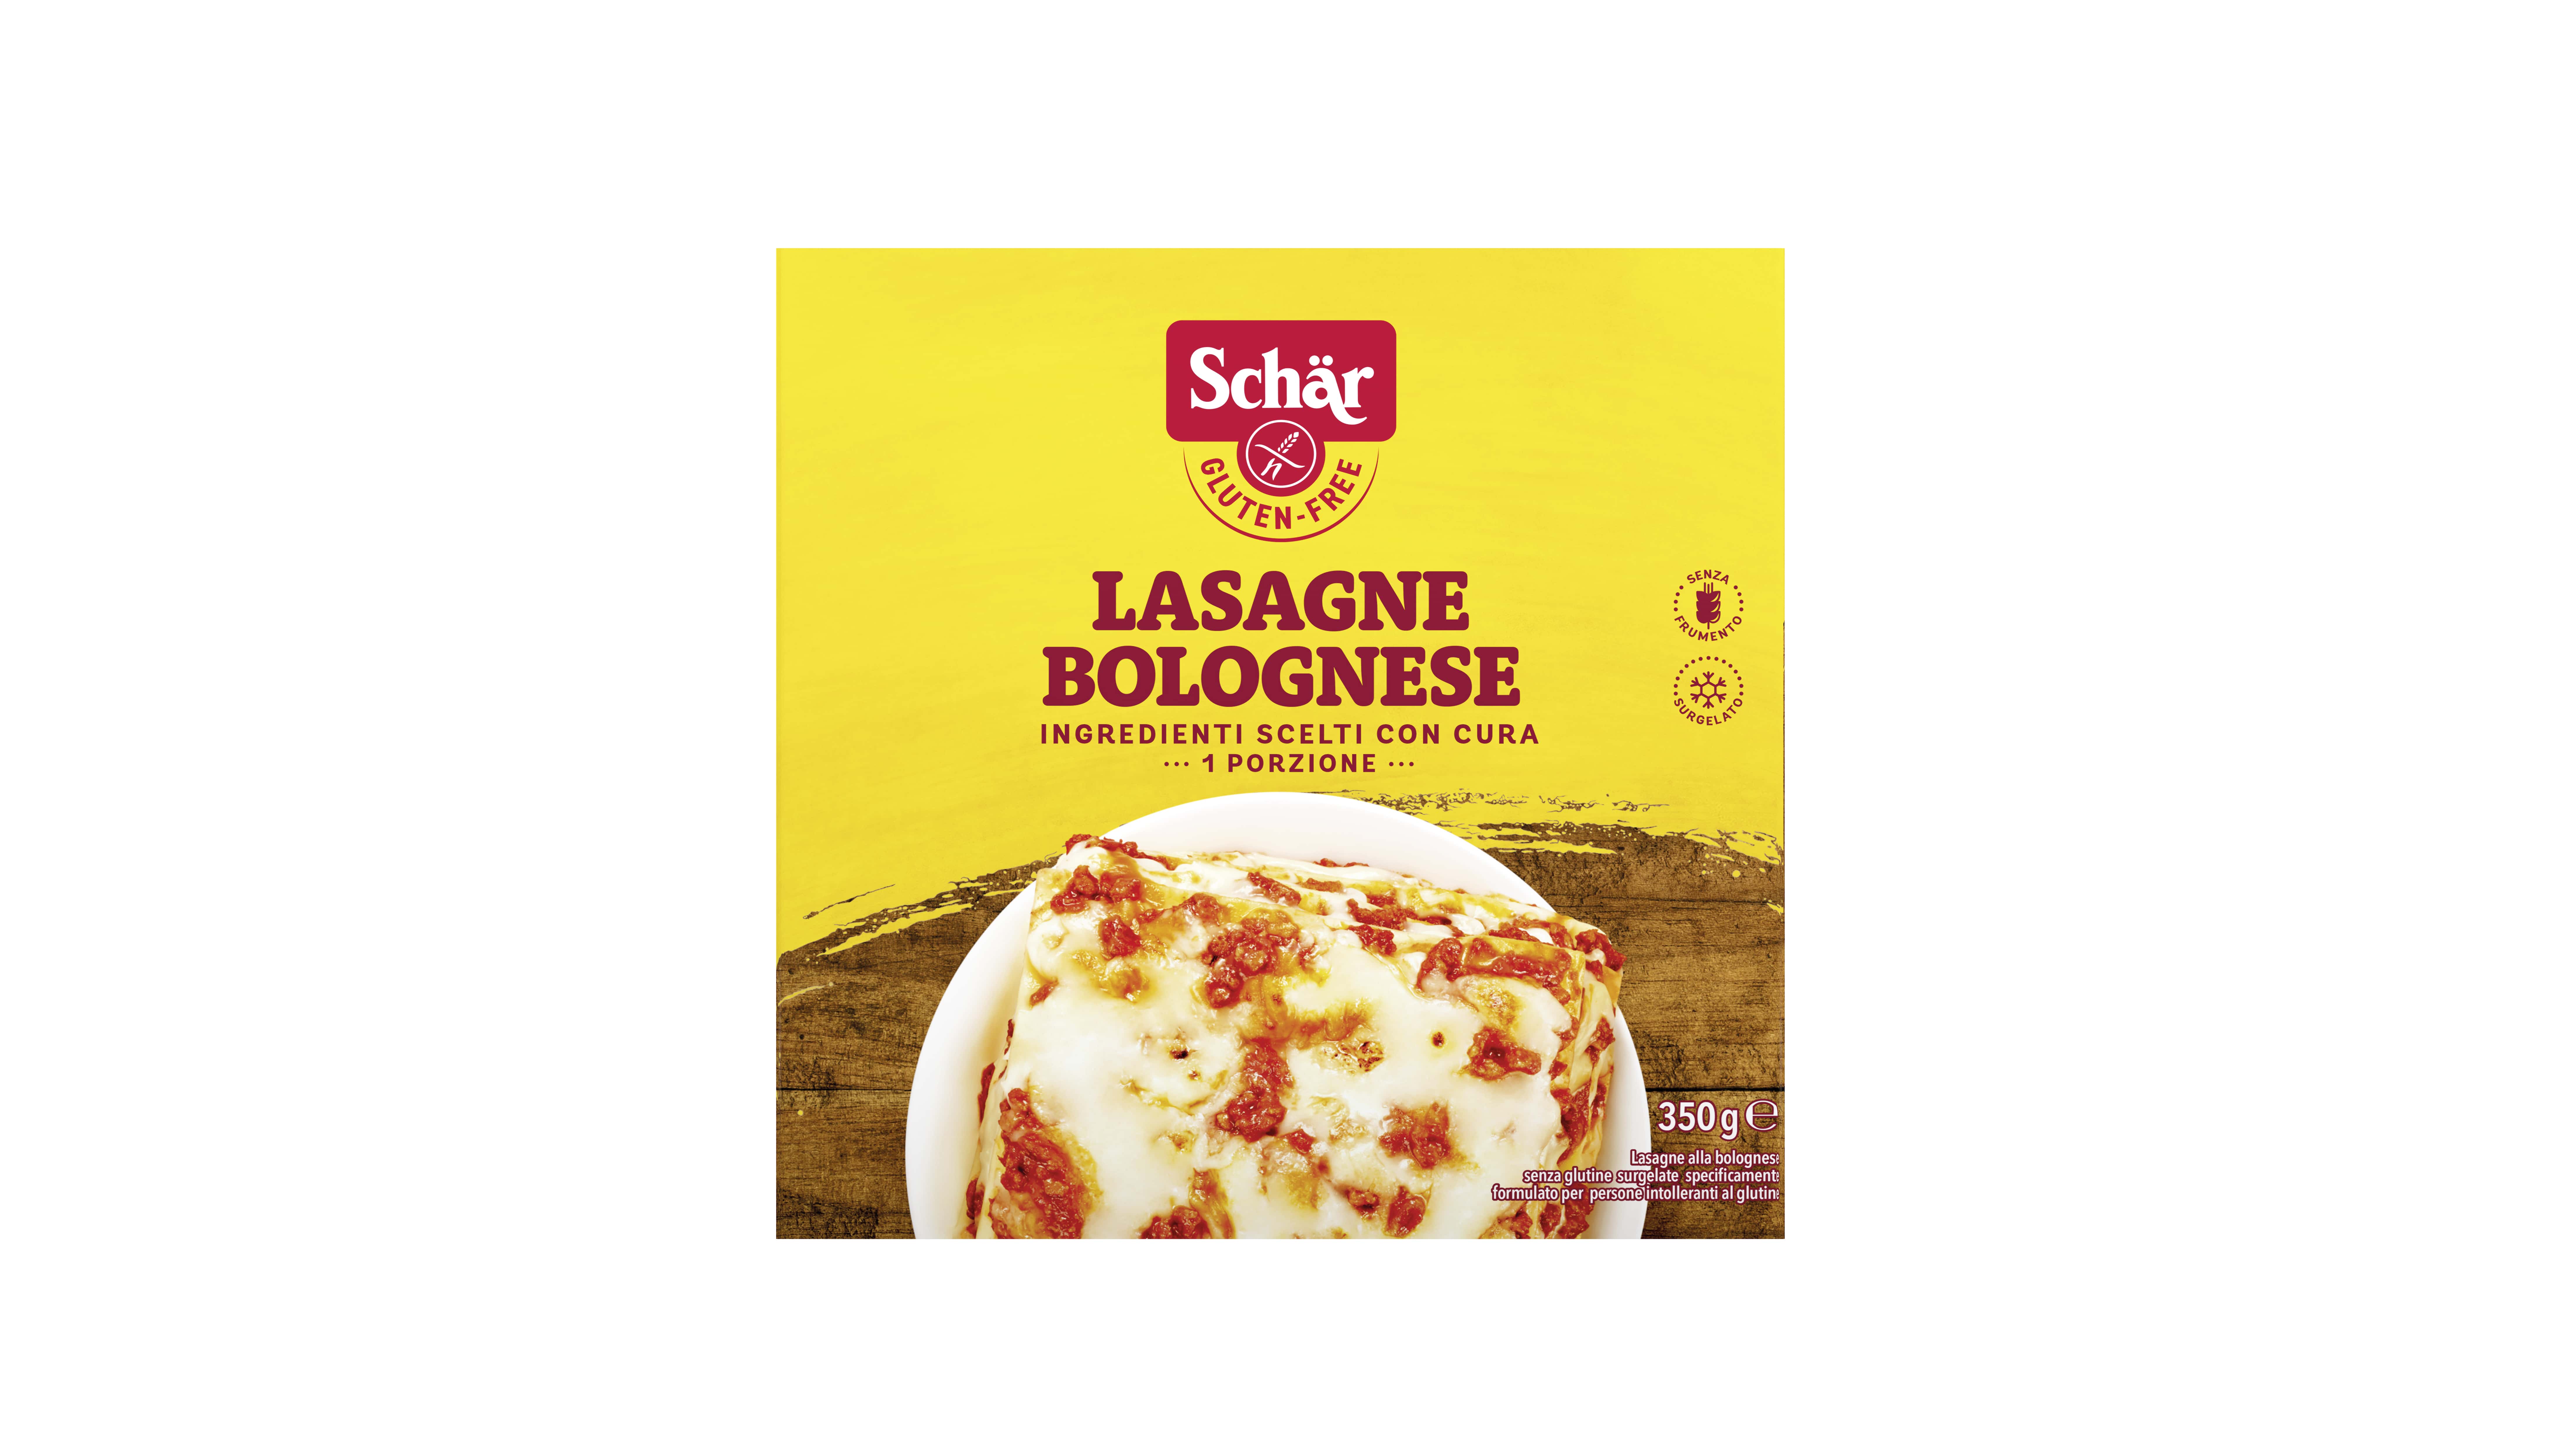 Schär Lasagne bologese sans gluten 300g